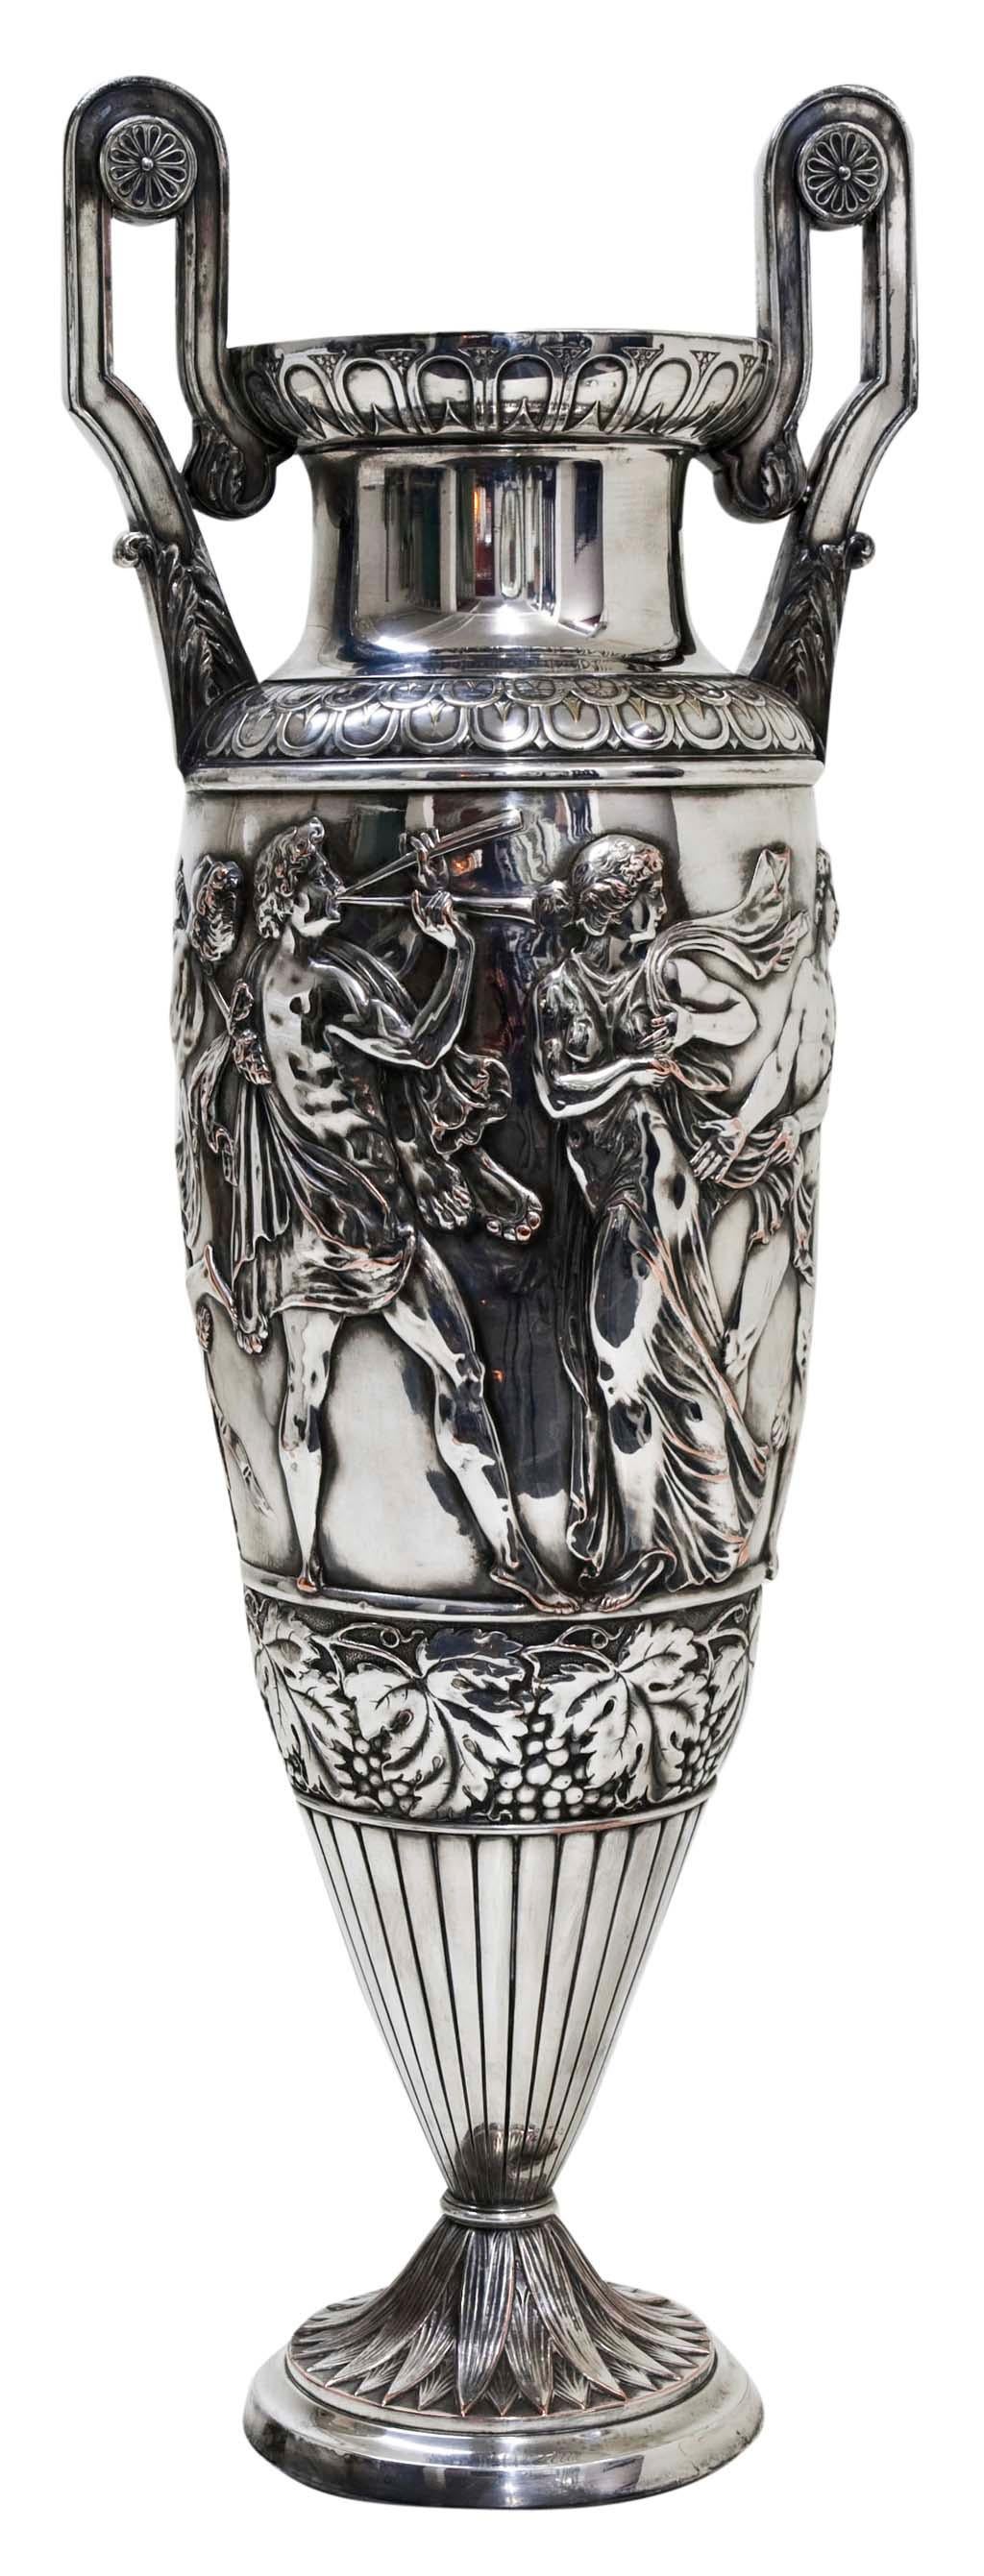 Pair of Big Vases Wmf, German, 1910 in Silver Plated, Jugendstil, Art Nouveau For Sale 2